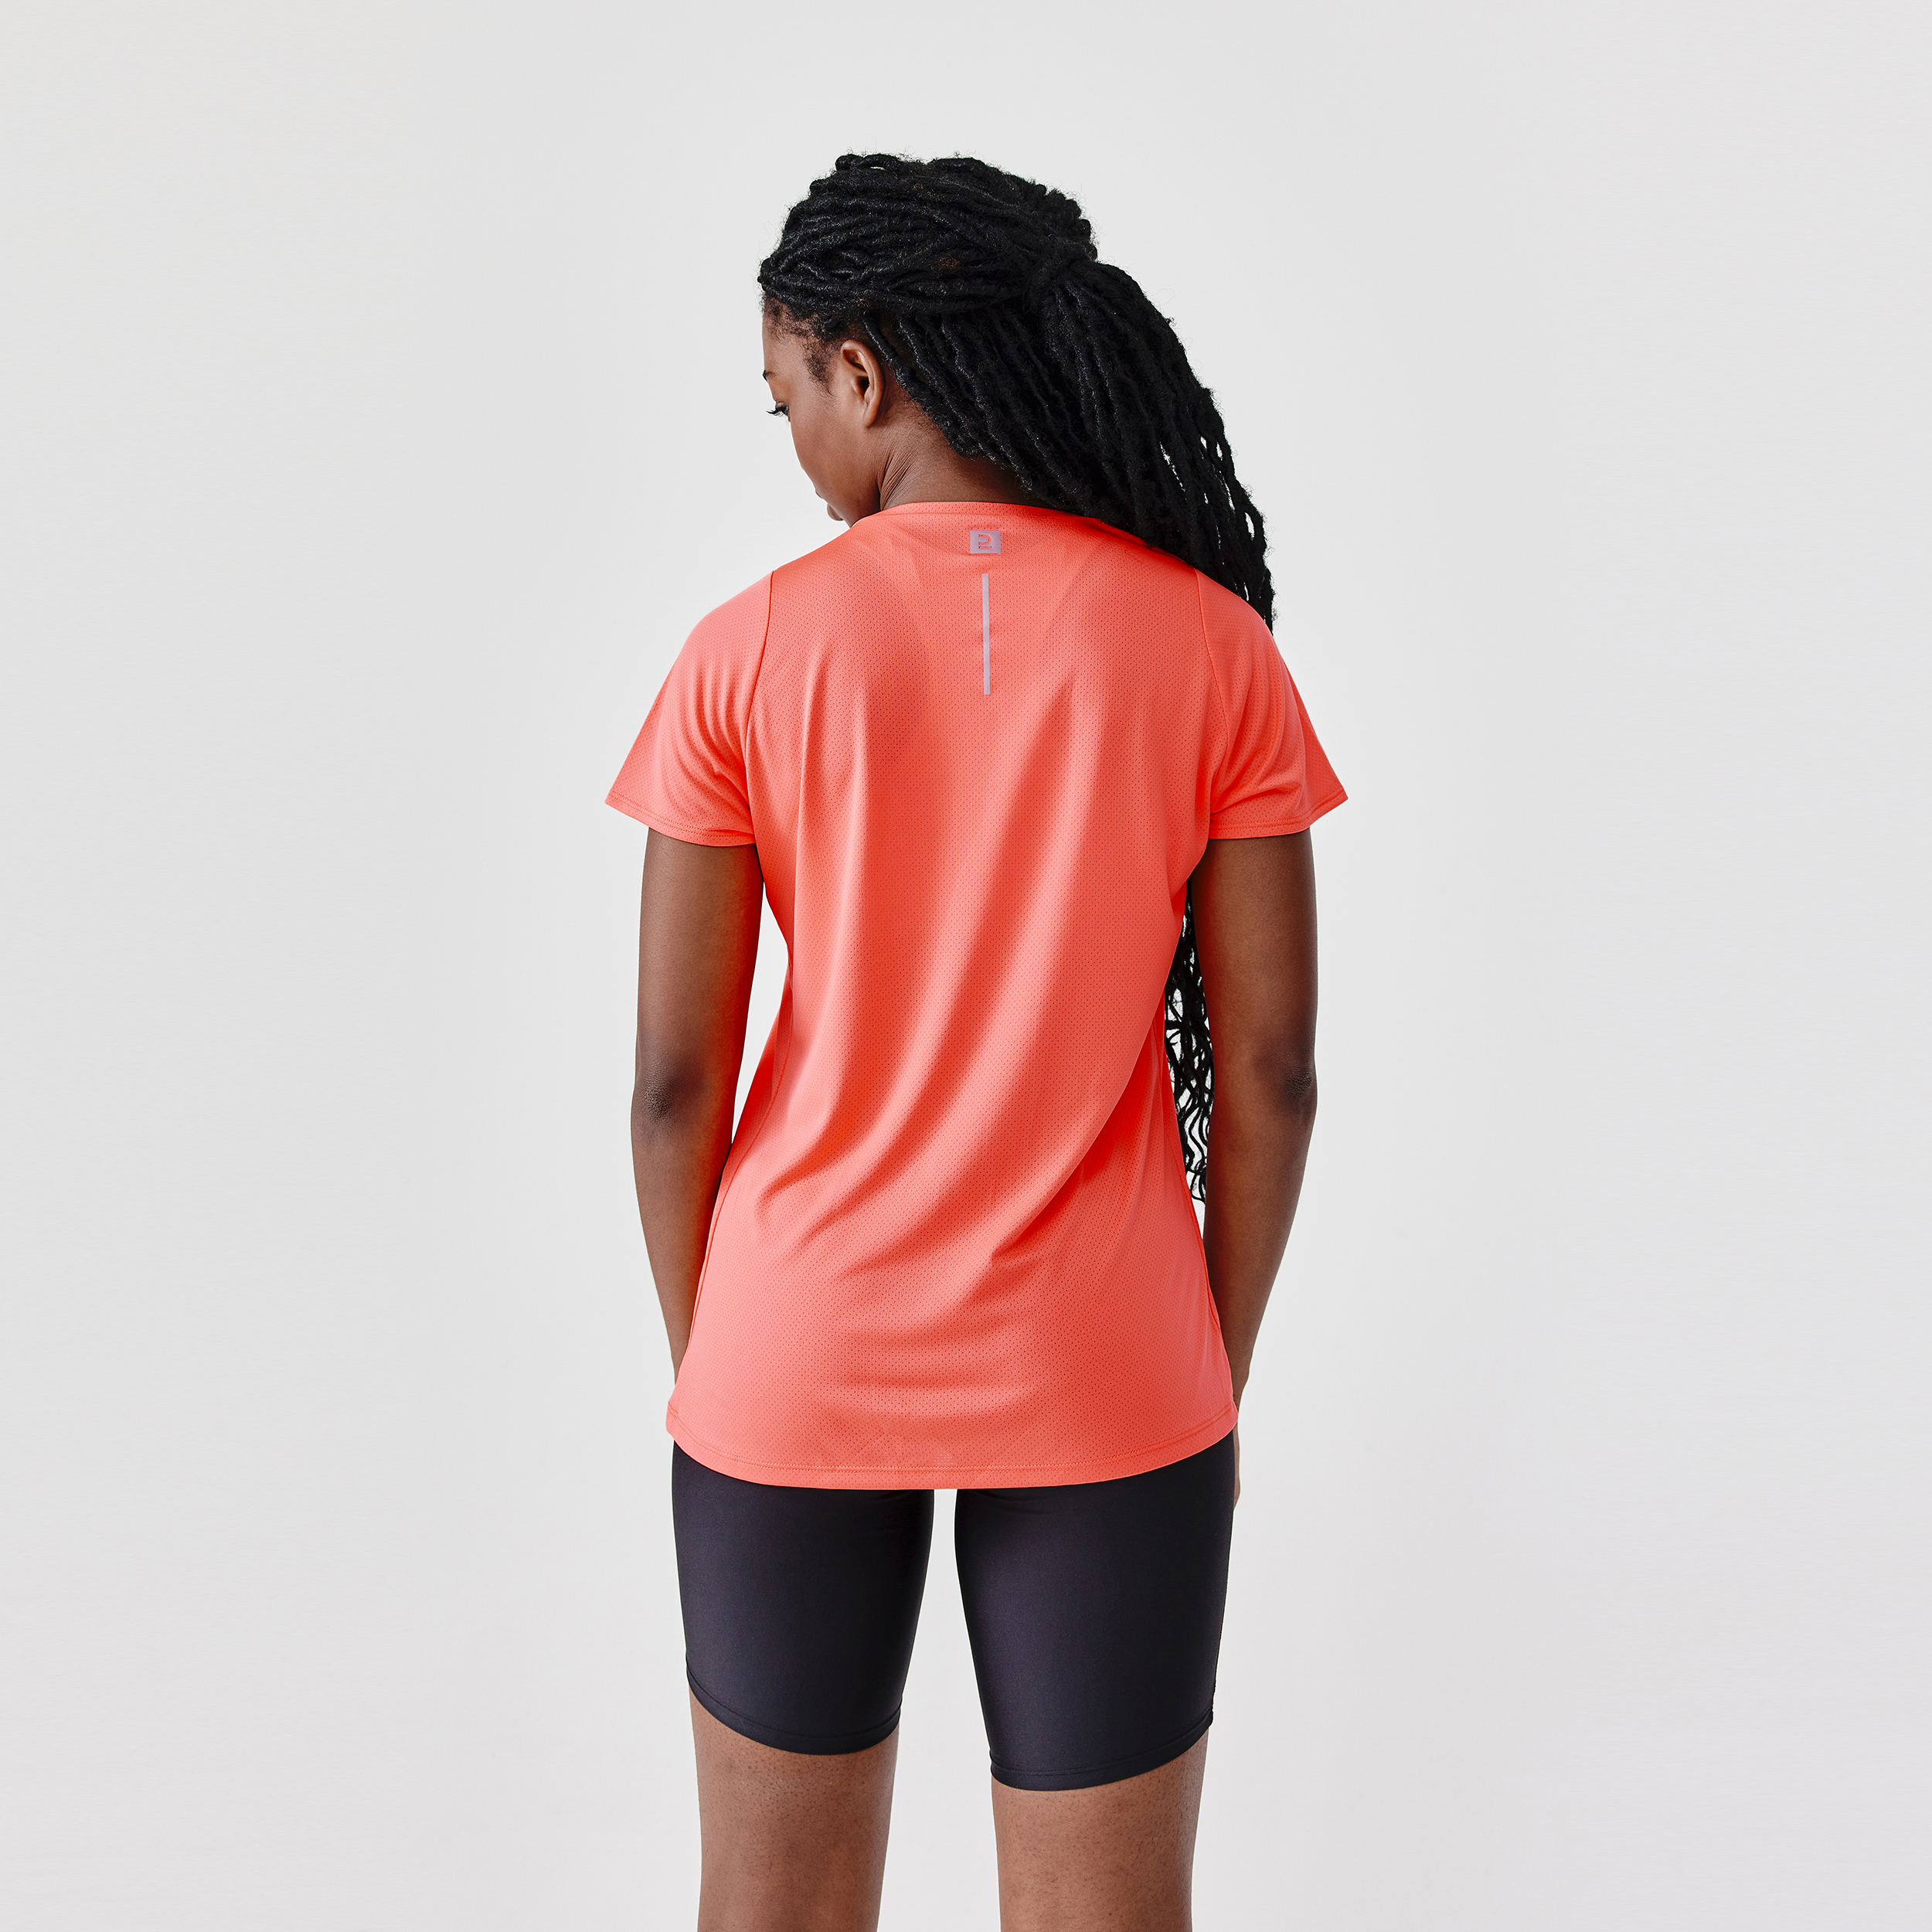 T-shirt manches courtes running respirant femme - Dry corail pour les clubs  et collectivités